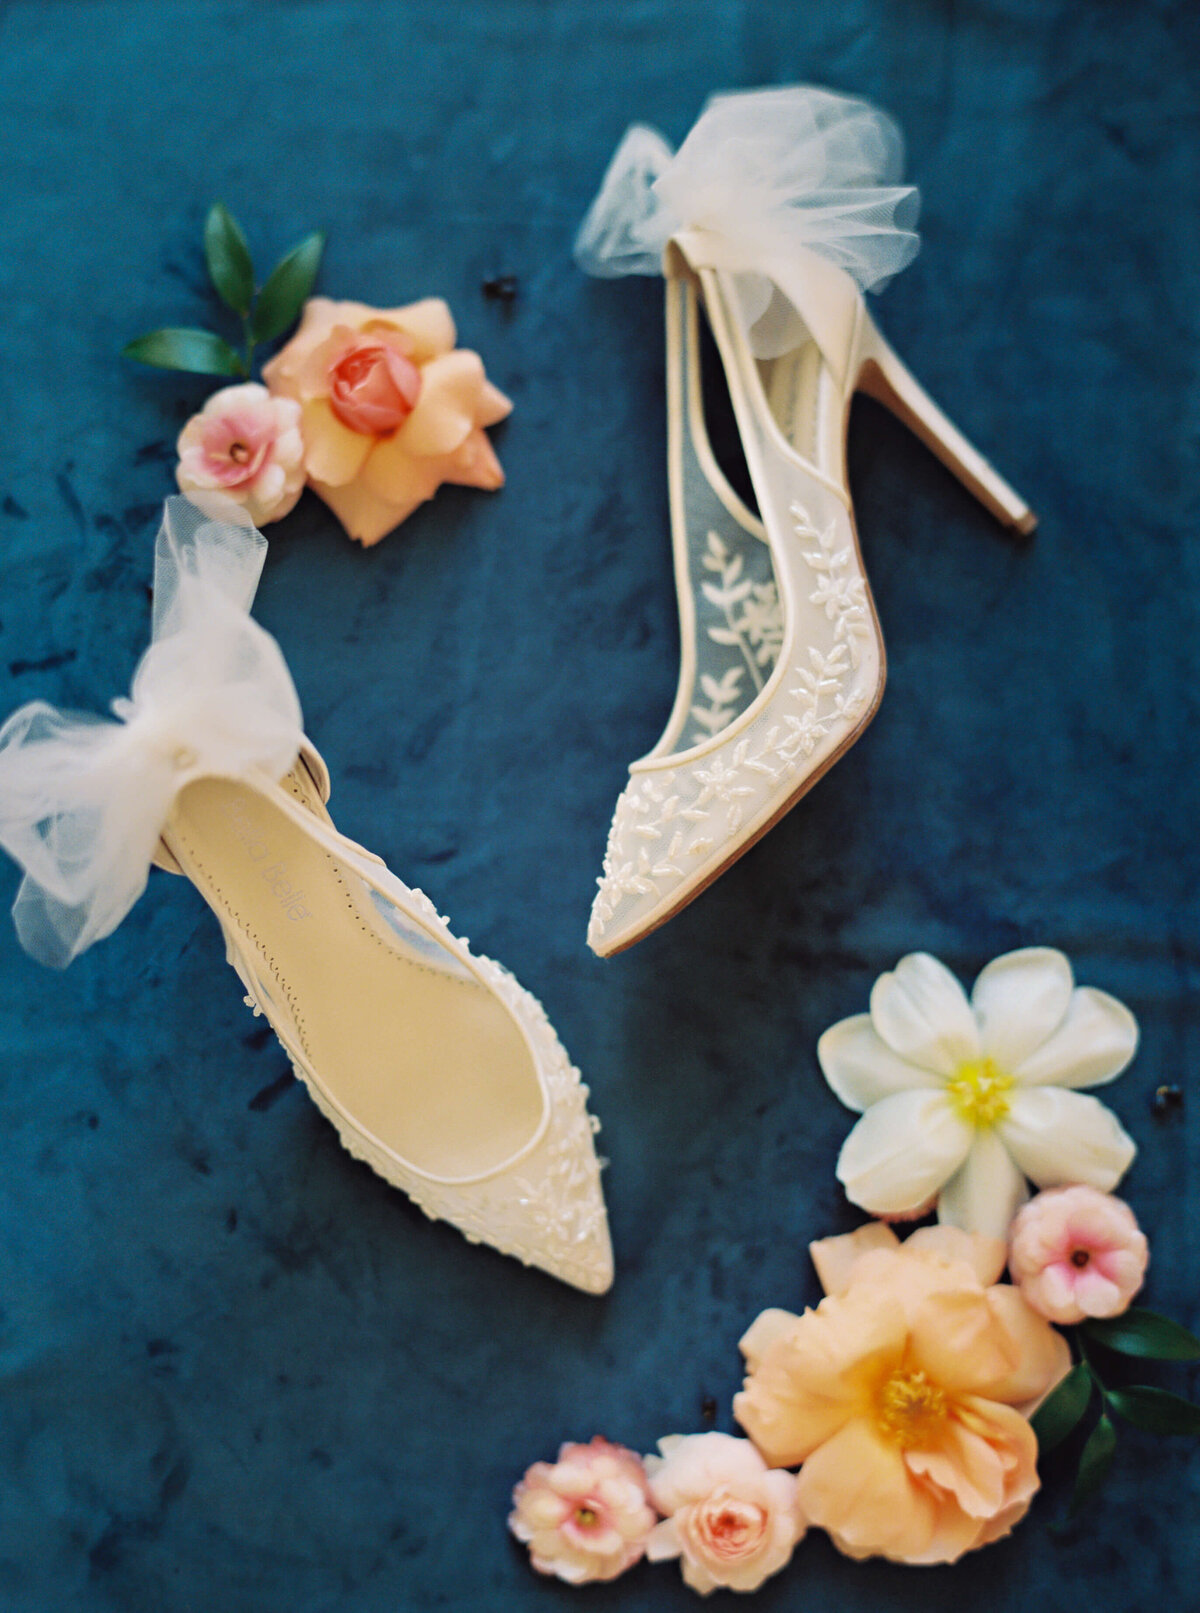 Lace bridal shoes by Bella Belle